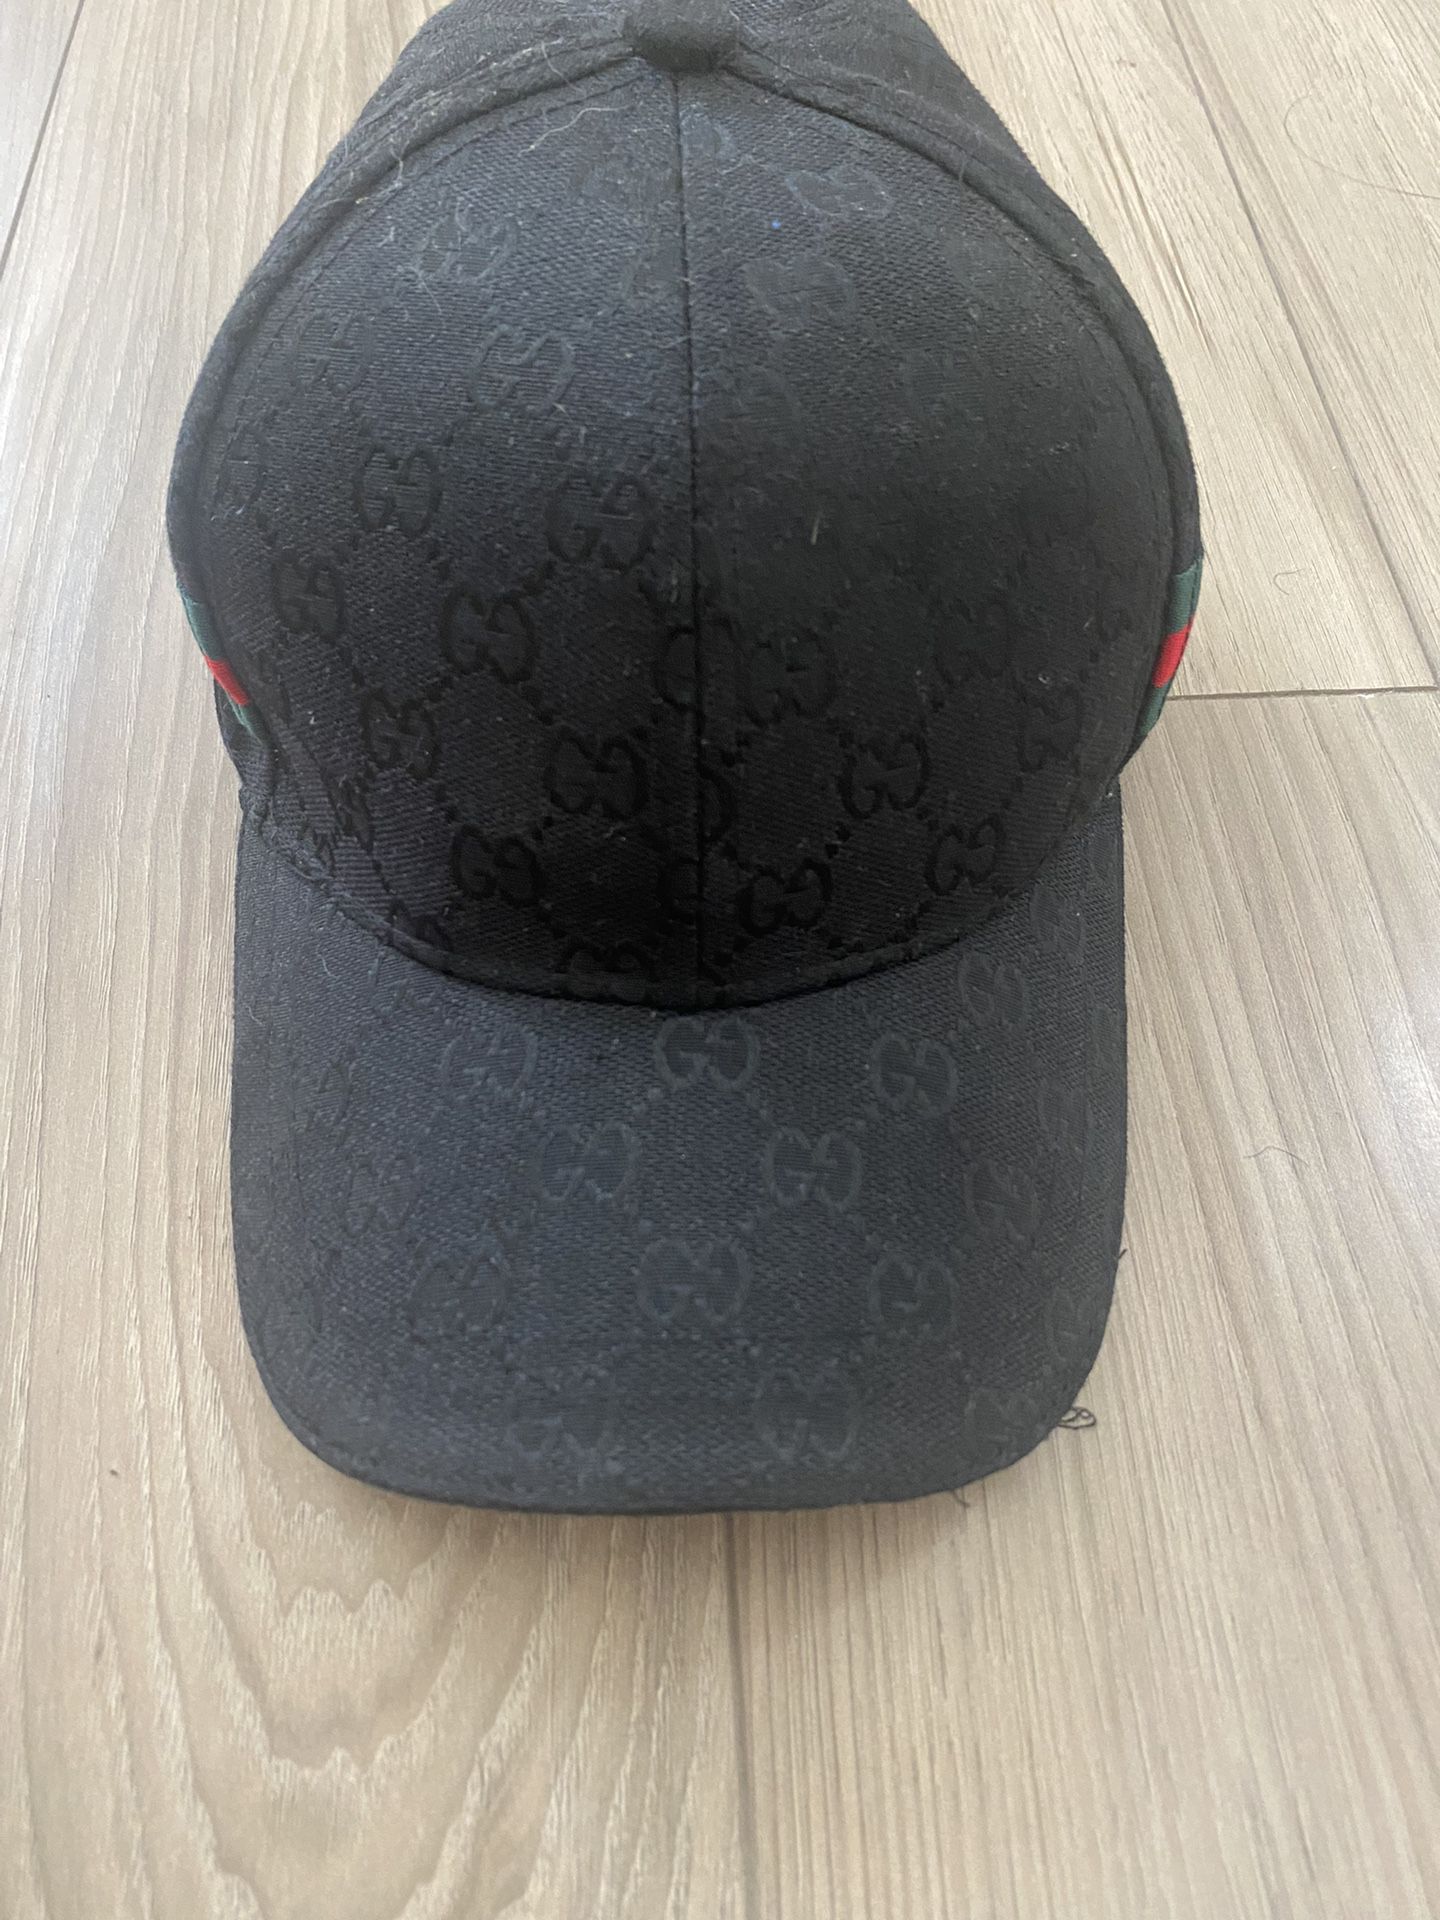 Original GG Gucci Canvas Baseball Cap - Black logo GG